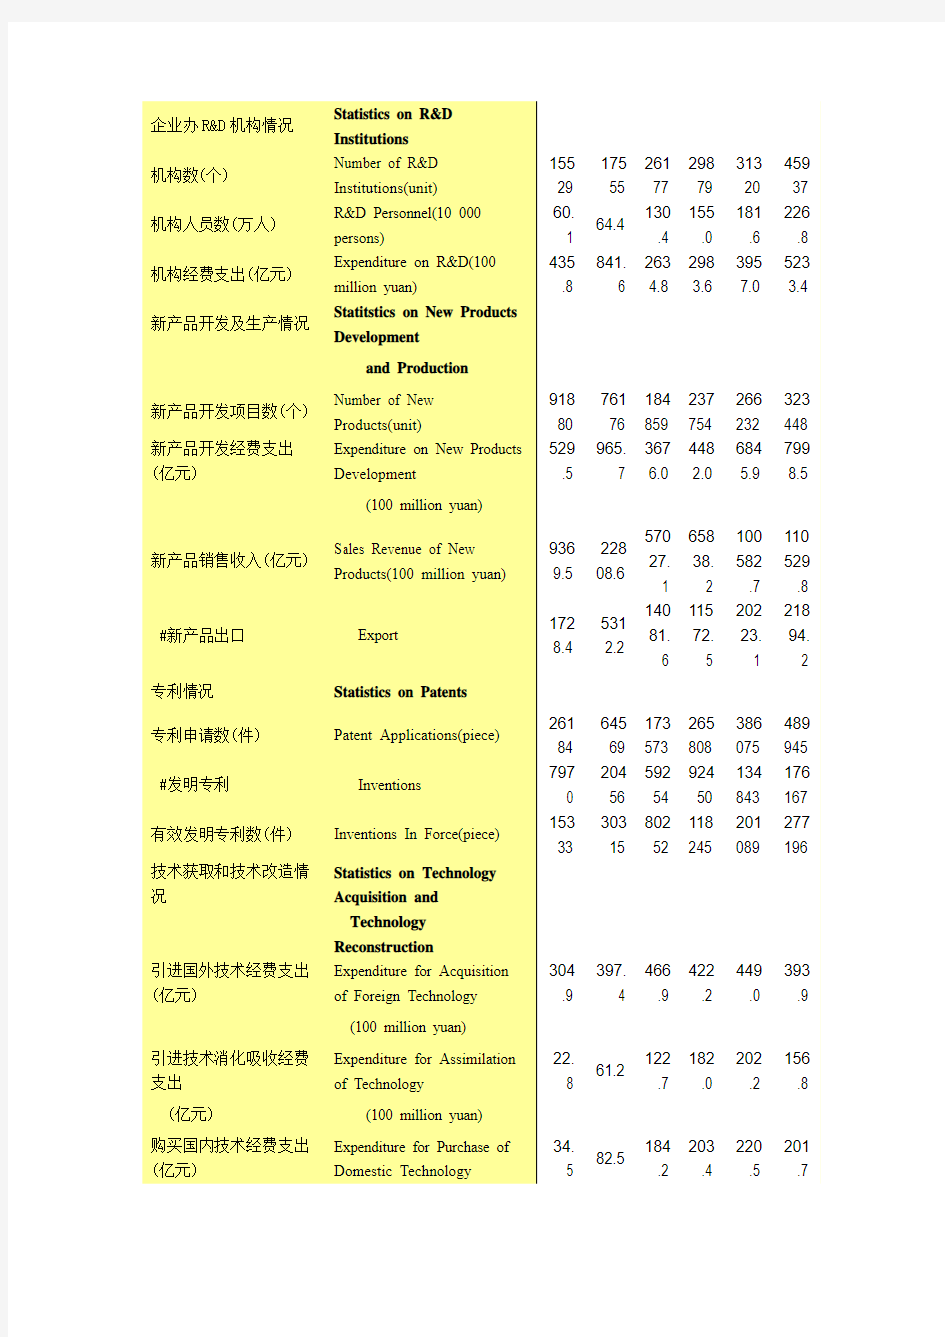 2012年中国科技统计年鉴(注意与中国统计年鉴不同)